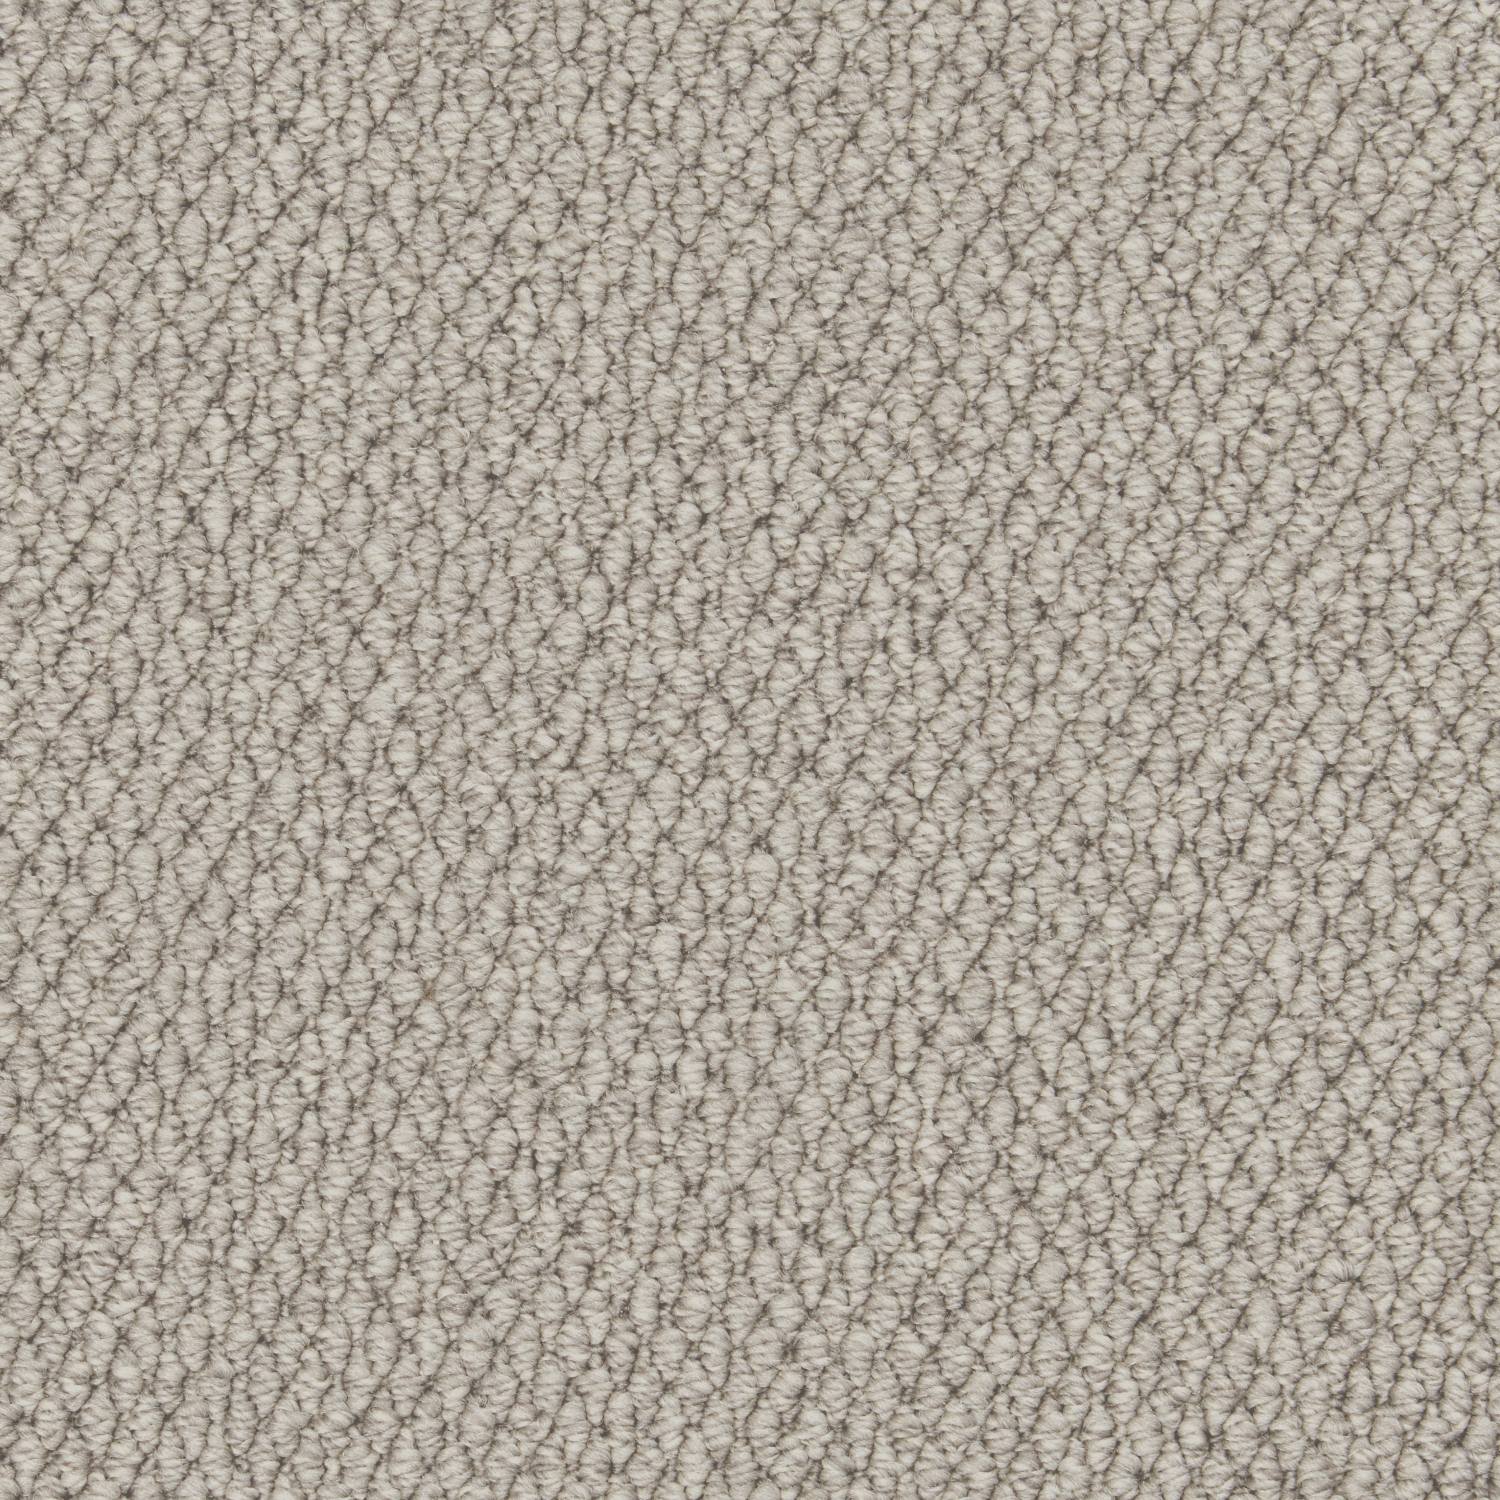 Rural Textures Loop Carpet - Silver Sage Weave